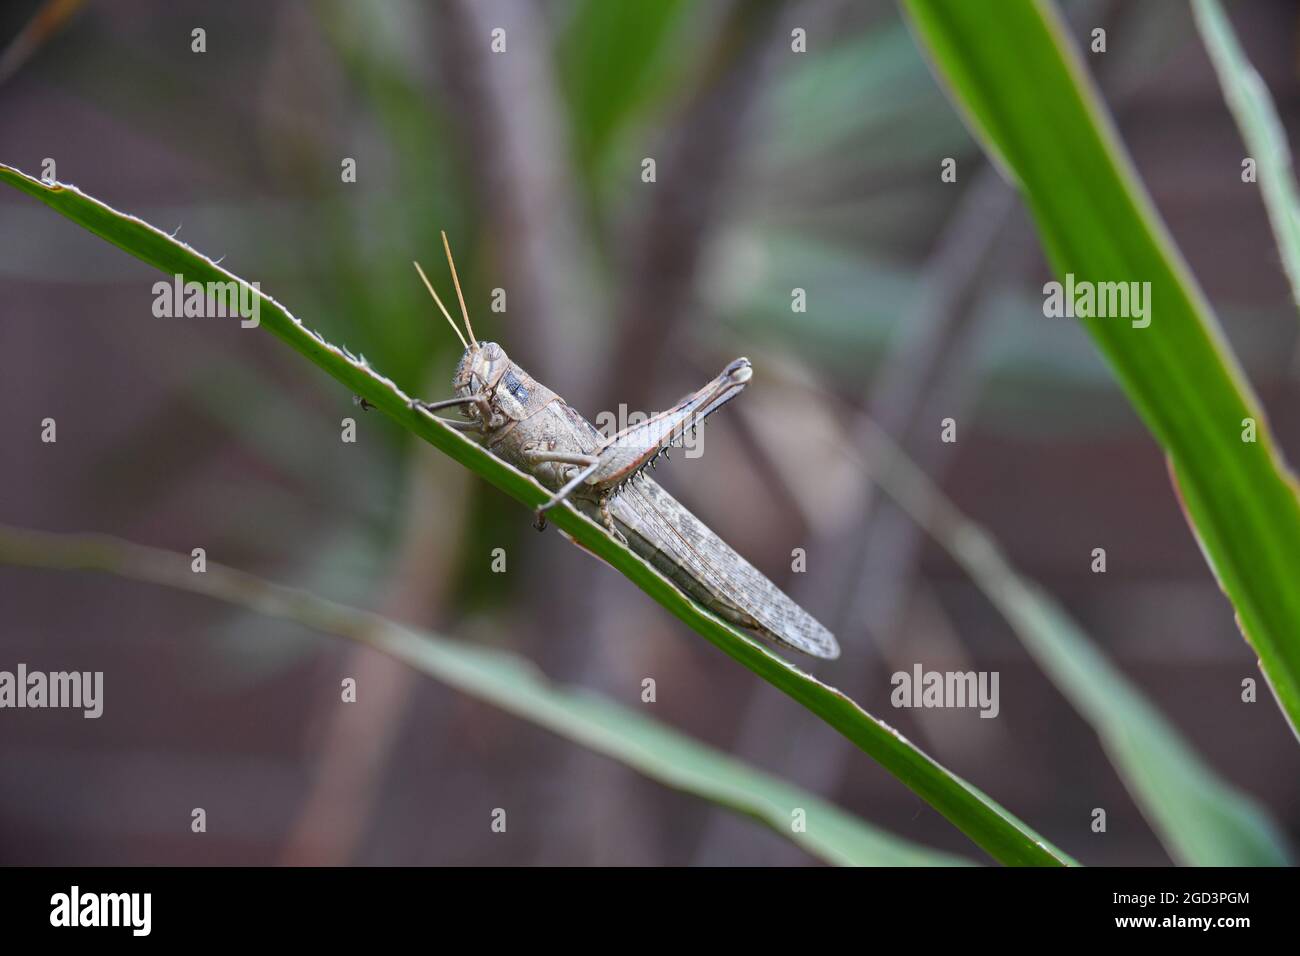 Grasshopper in my garden Stock Photo